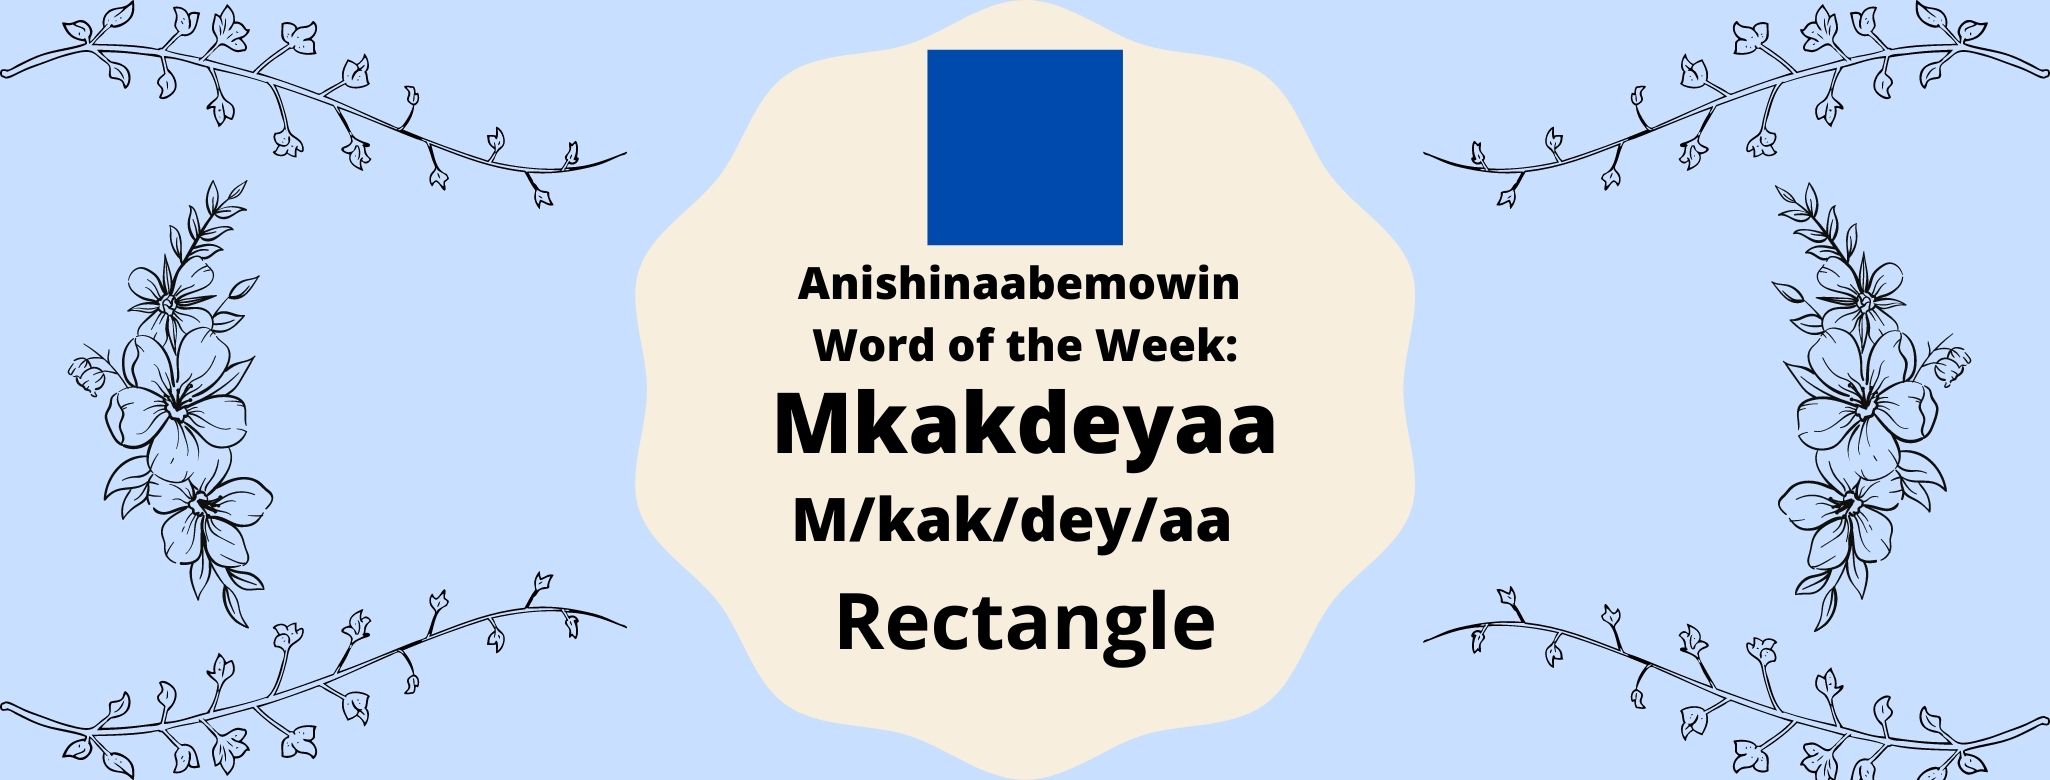 Anishinaabemowin Word of the Week Mkakdeyaa Mkakdeyaa Rectangle